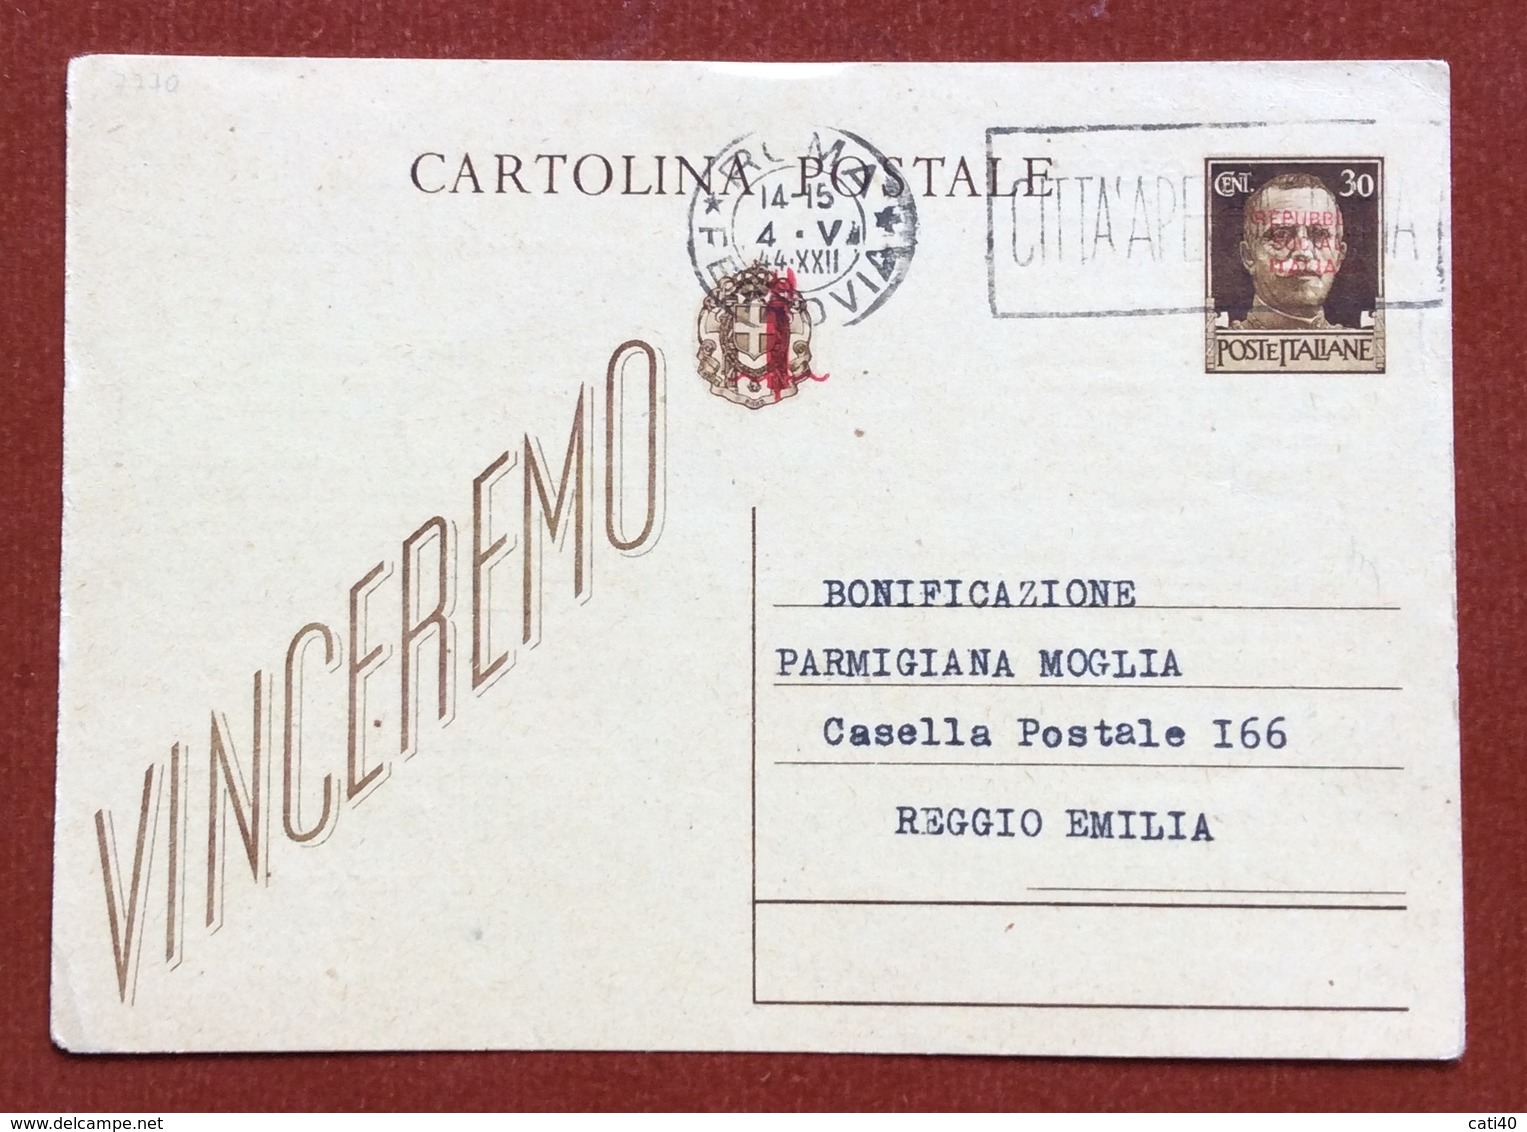 CARTOLINA POSTALE REPUBBLICA SOCIALE 30 C. VINCEREMO  SOVRASTAMPATA  CON STAMPA PRIVATA SOC.GEOGRAFICA ITALIANA - Stamped Stationery